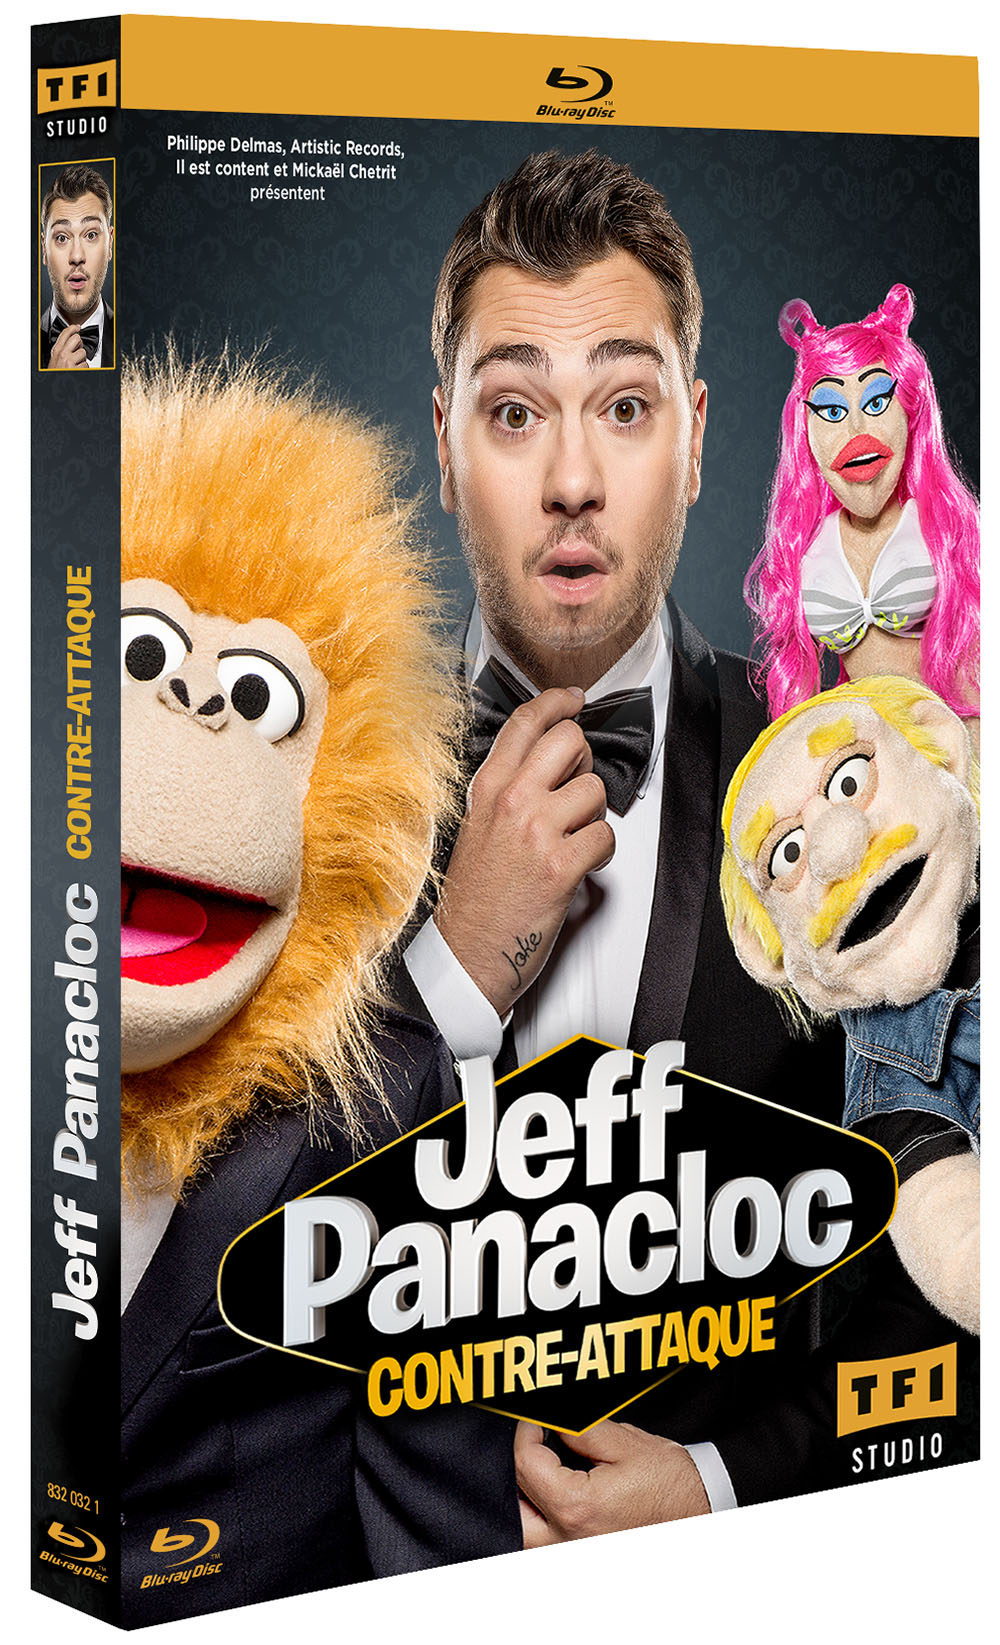 Le ventriloque Jeff Panacloc dans 69 minutes sans chichis ! 